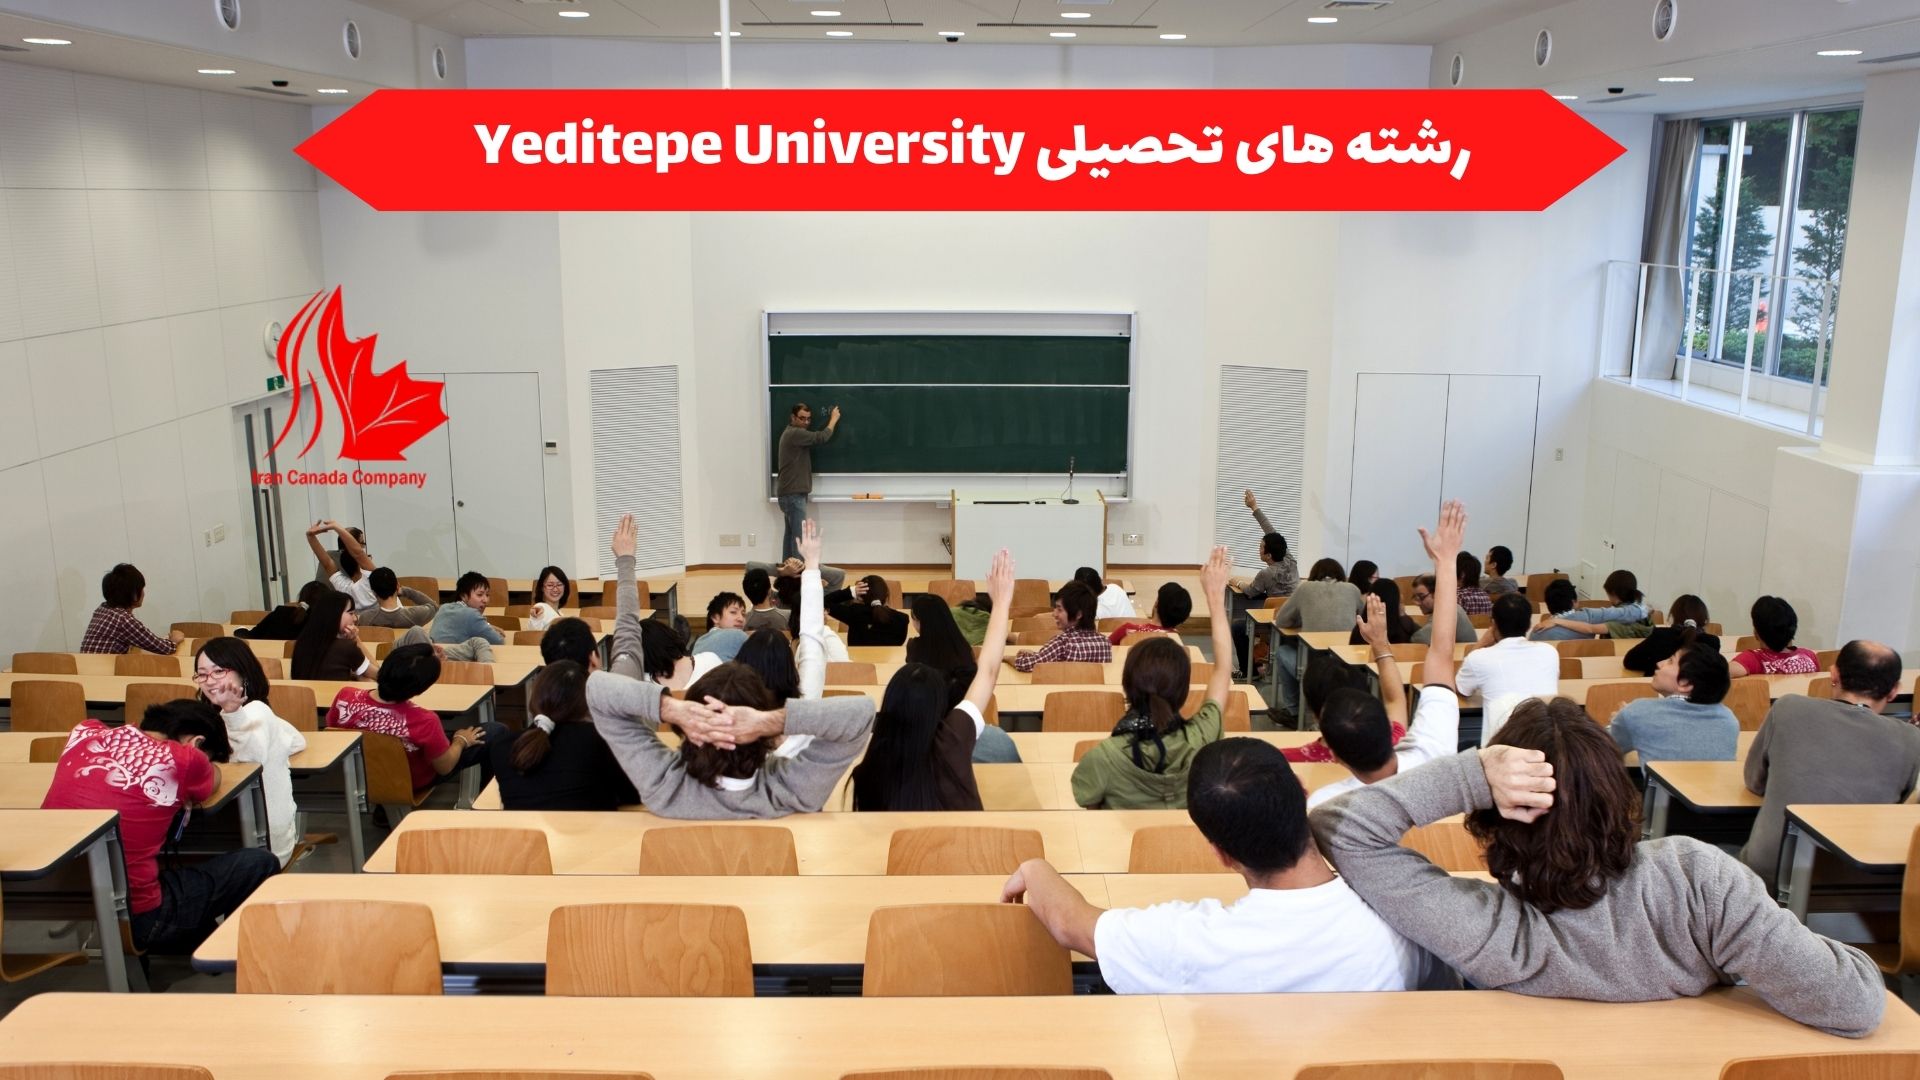 رشته های تحصیلی Yeditepe University